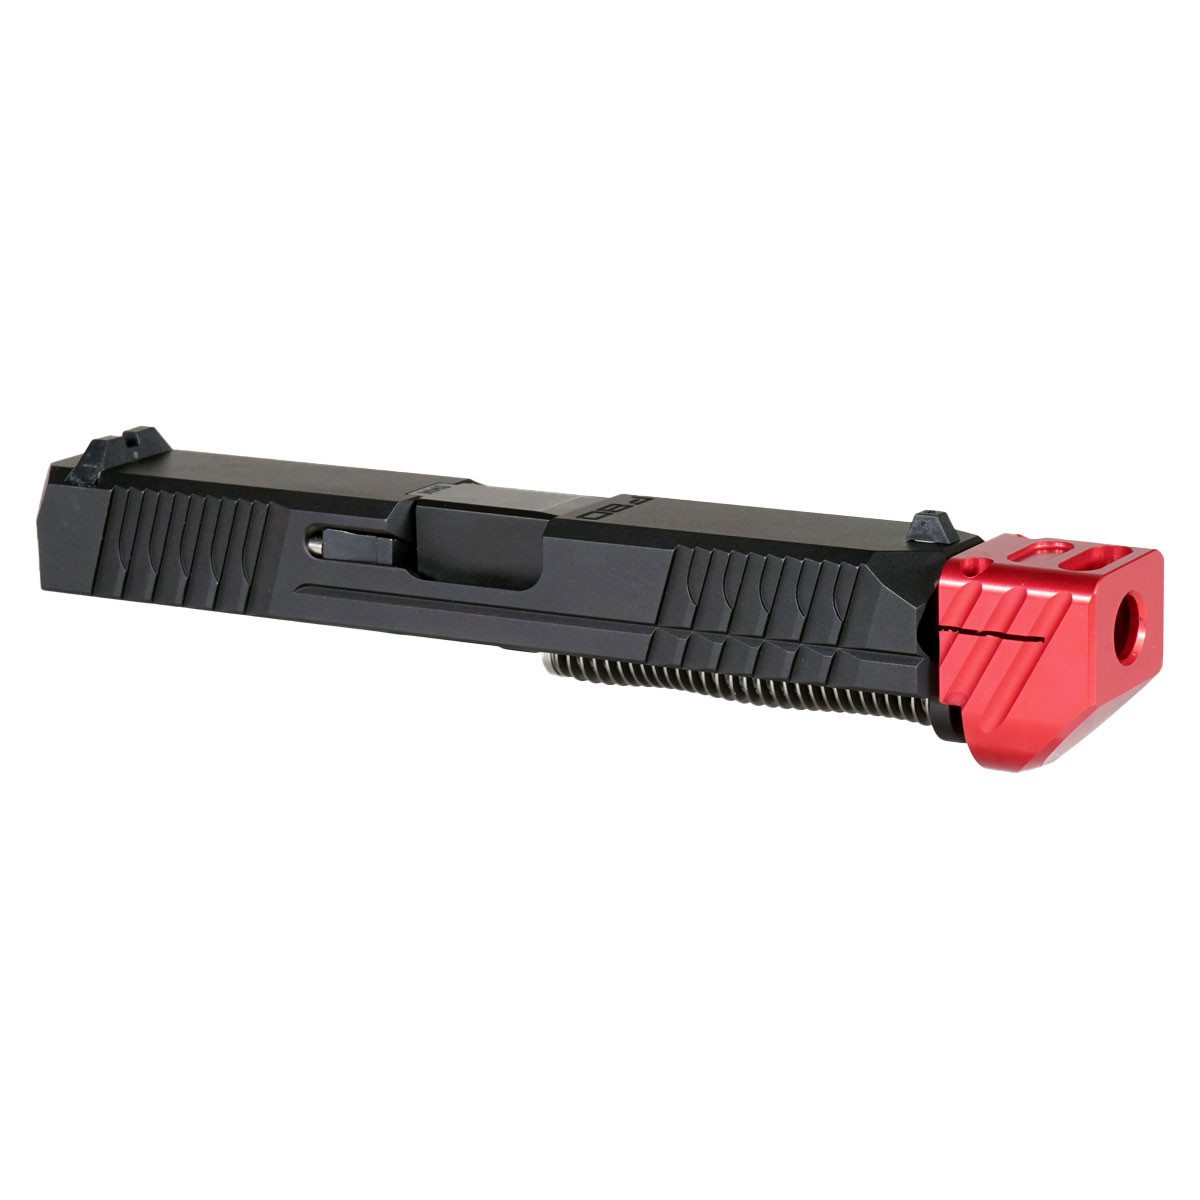 DTT 'Paracausal V3 w/ Red Compensator' 9mm Complete Slide Kit - Glock 19 Gen 1-3 Compatible